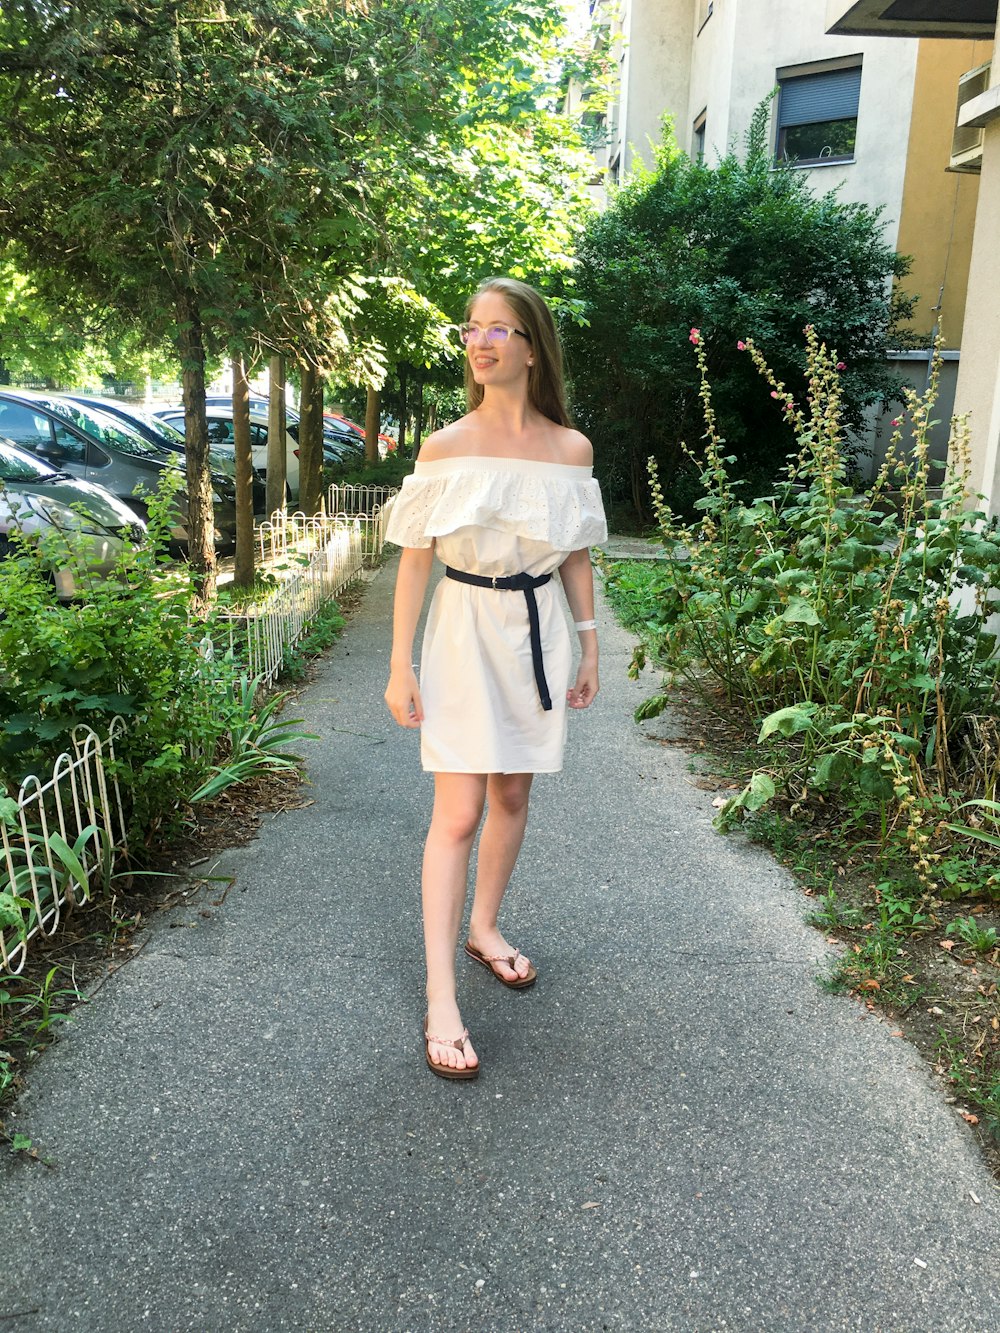 통로에 서 있는 하얀 드레스를 입은 여자